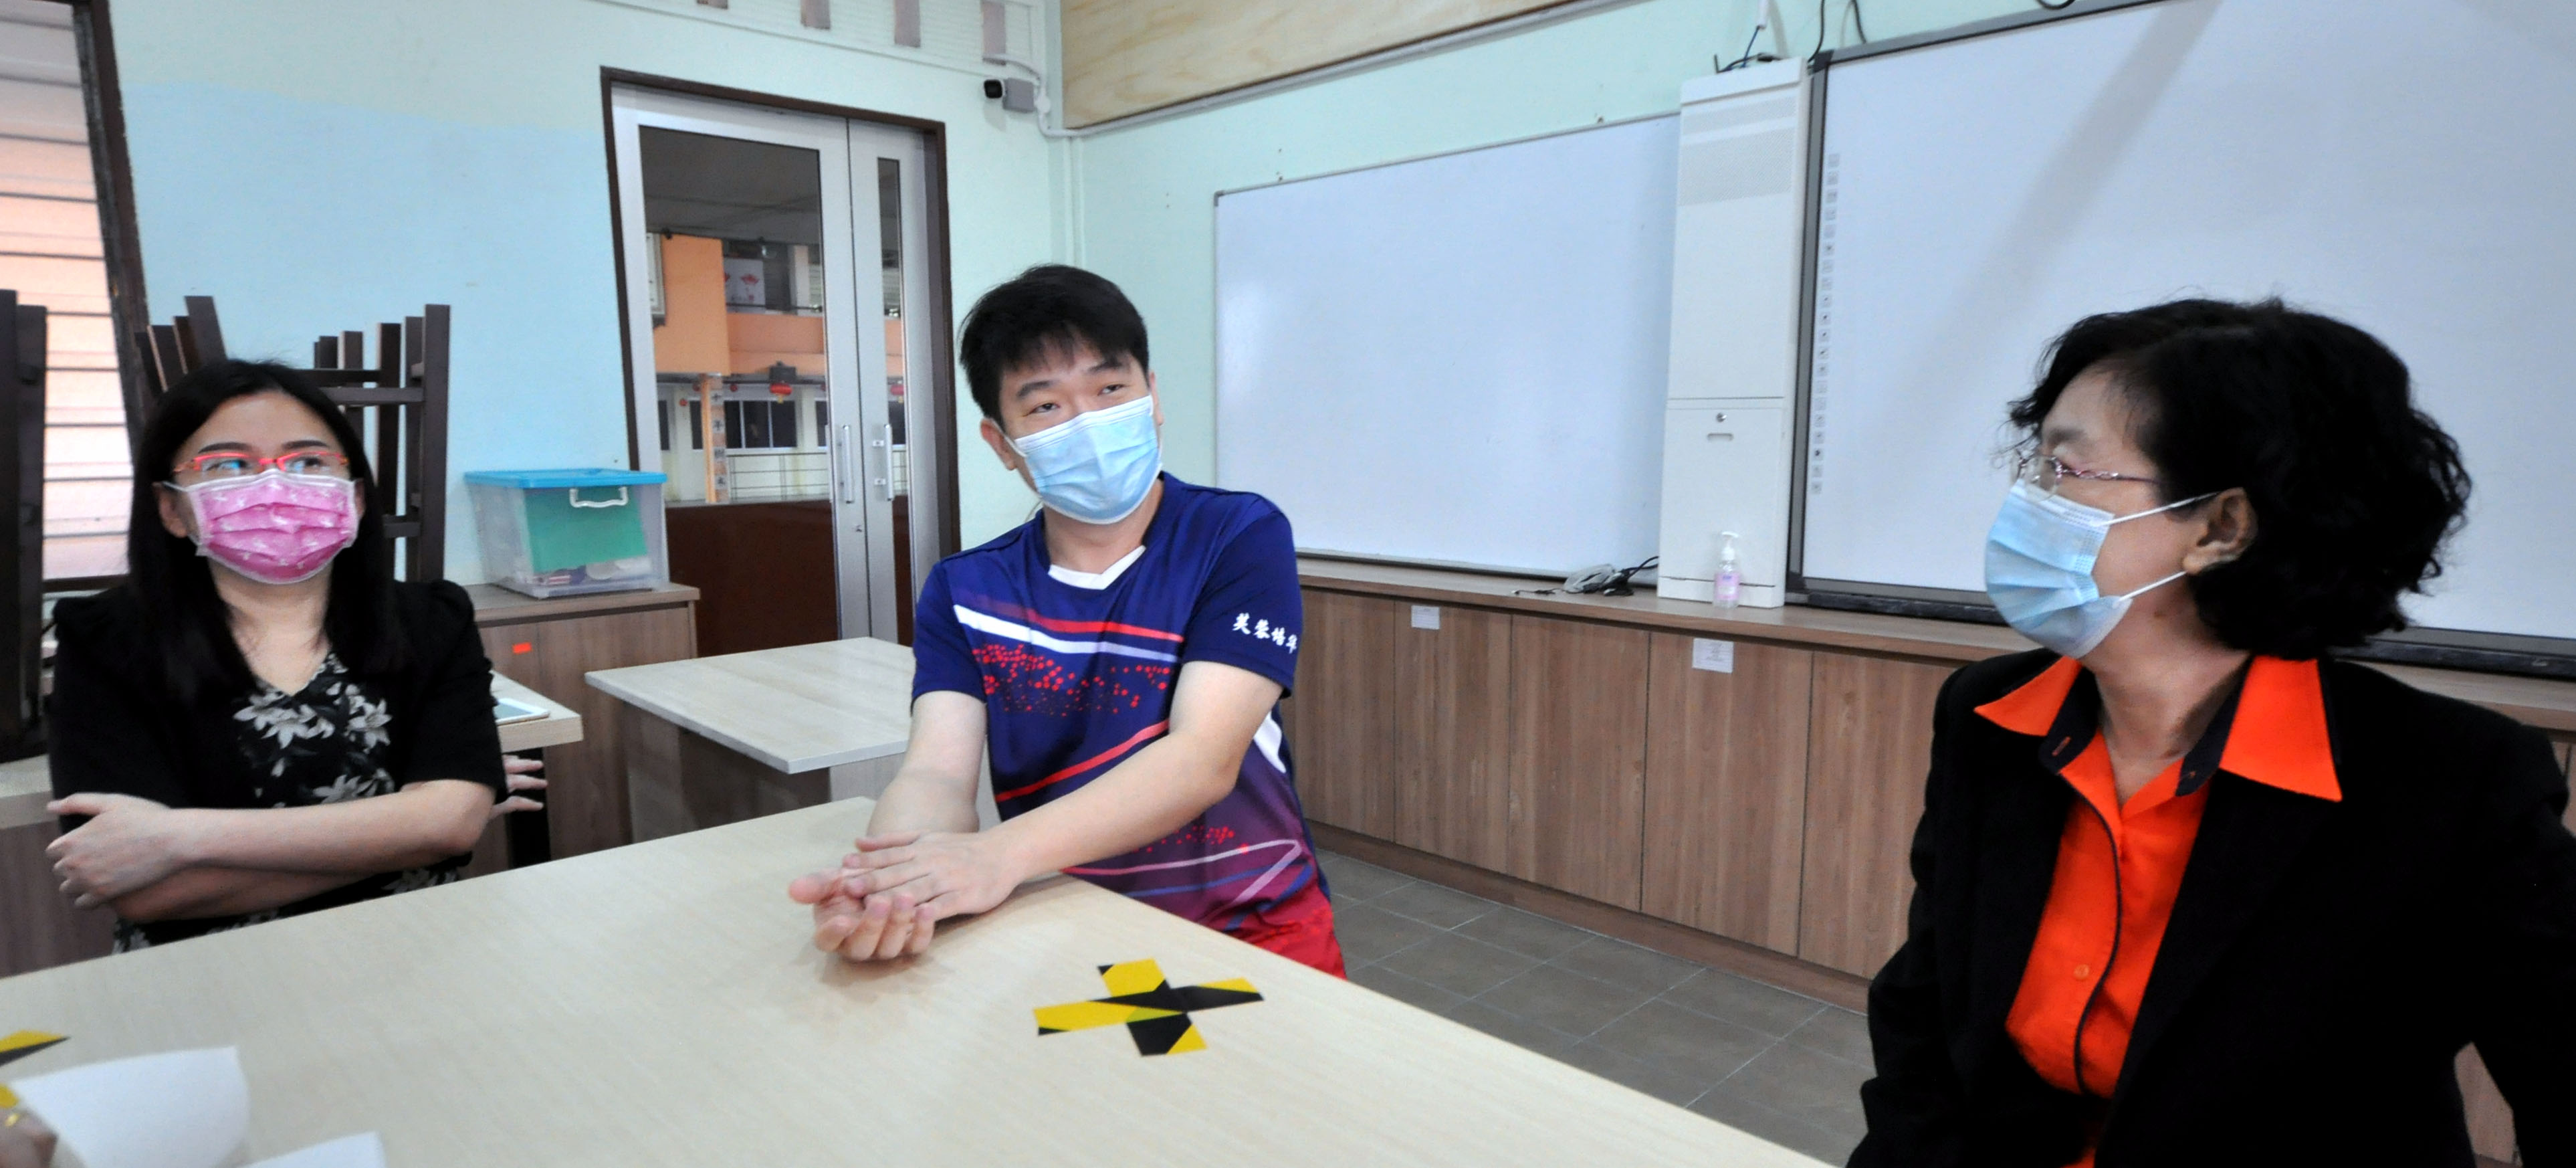 王伟耀（中）首次策划虚拟实景导览，花费了约3天时间研究、拍摄及整理照片，左为张晓薇、右为龙思岑。